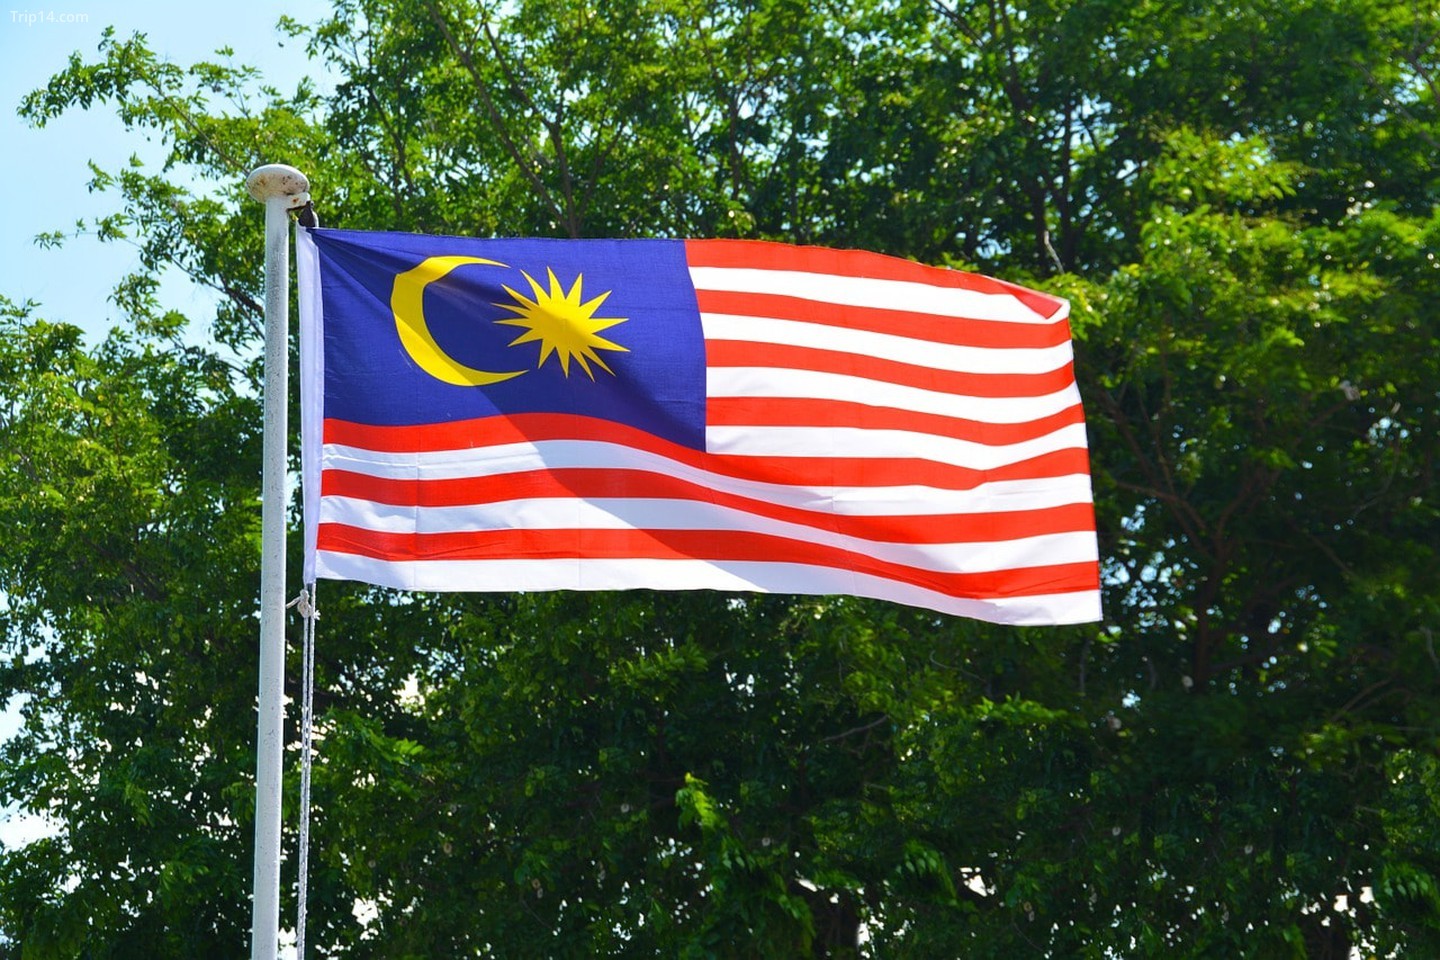 Quốc kỳ Malaysia có ý nghĩa rất đặc biệt và đa dạng. Hình ảnh ấn tượng trên cờ đại diện cho các giá trị lịch sử và văn hóa của quốc gia. Tìm hiểu thêm về những tầm nhìn và mục tiêu của Malaysia thông qua quốc kỳ đầy ý nghĩa này, và cảm nhận niềm tự hào của người dân Malaysia.